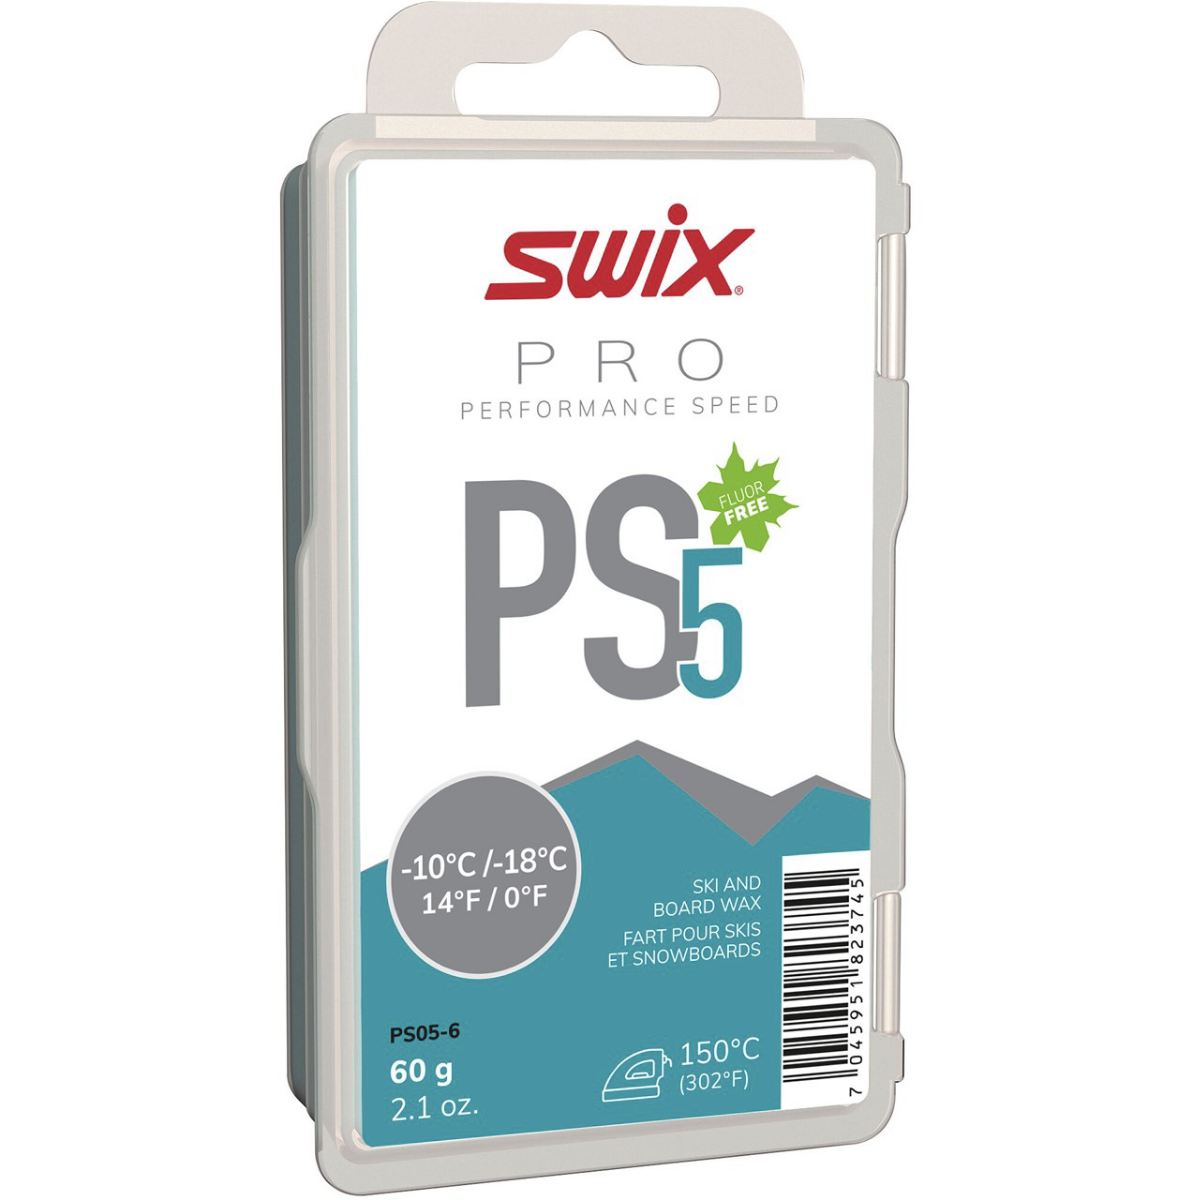 Bilde av Swix  PS5 Turquoise, -10°C/-18°C, 60g